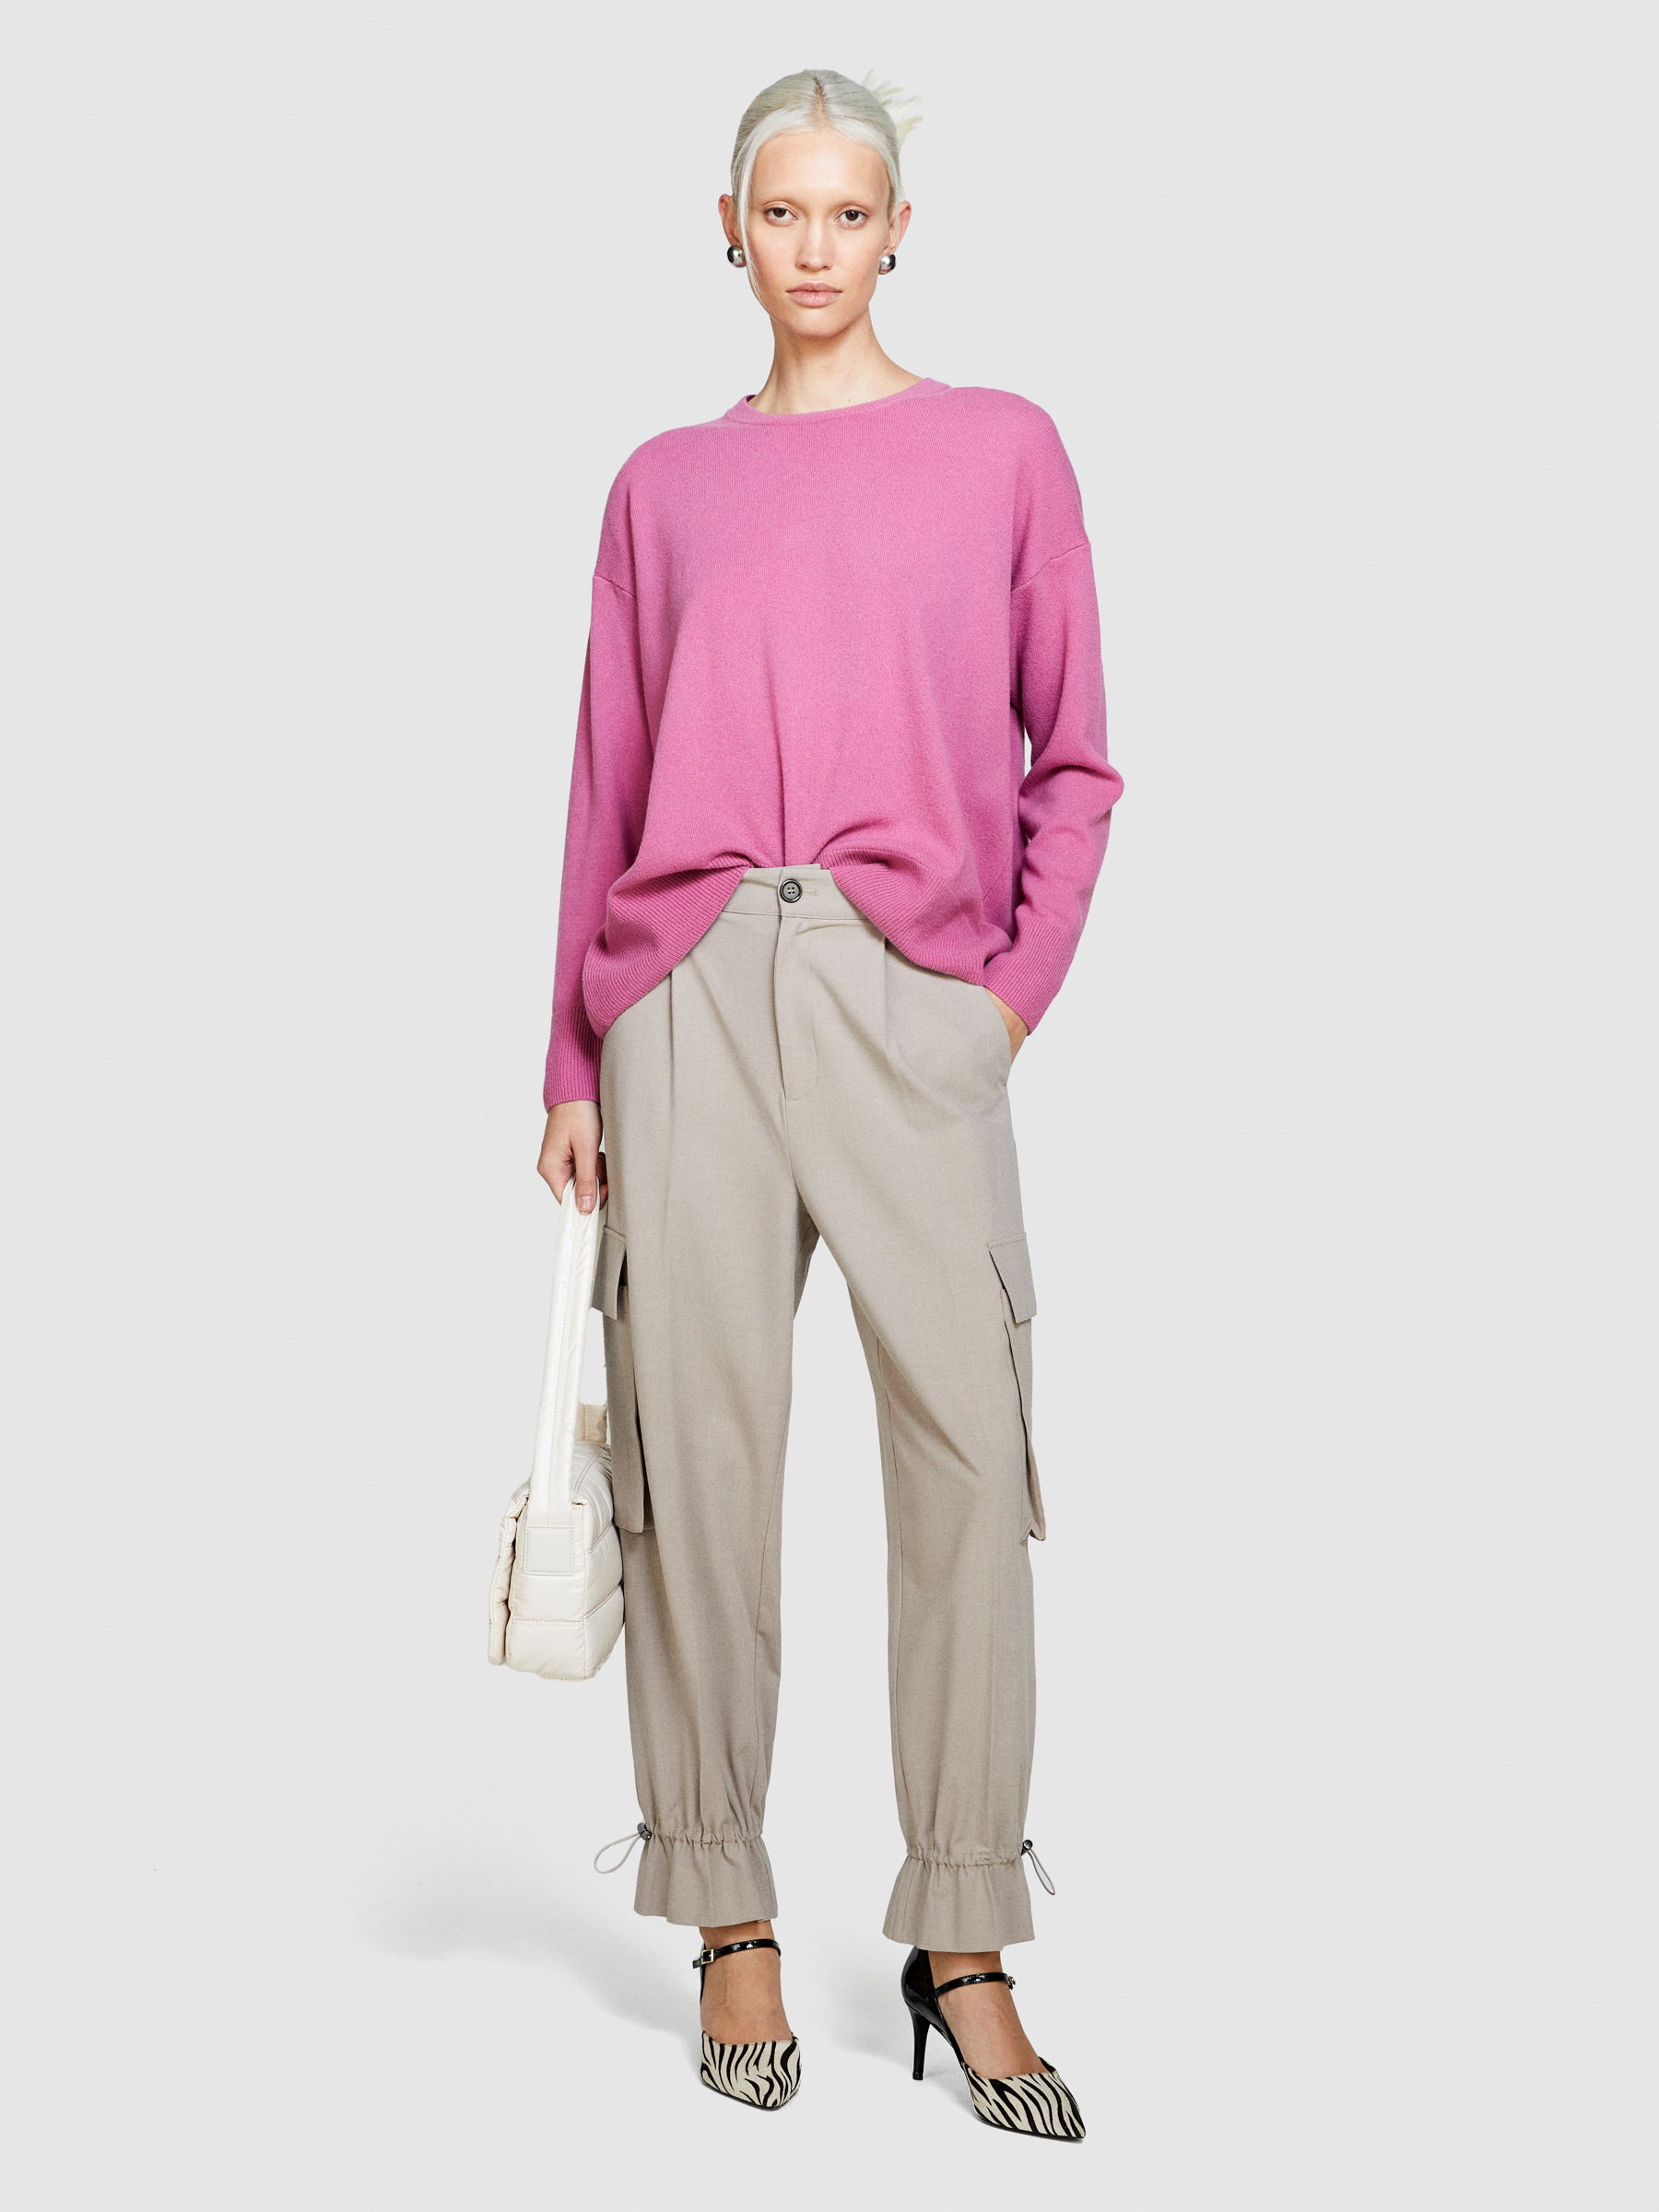 Sisley - Boxy Fit Sweater, Woman, Pink, Size: S